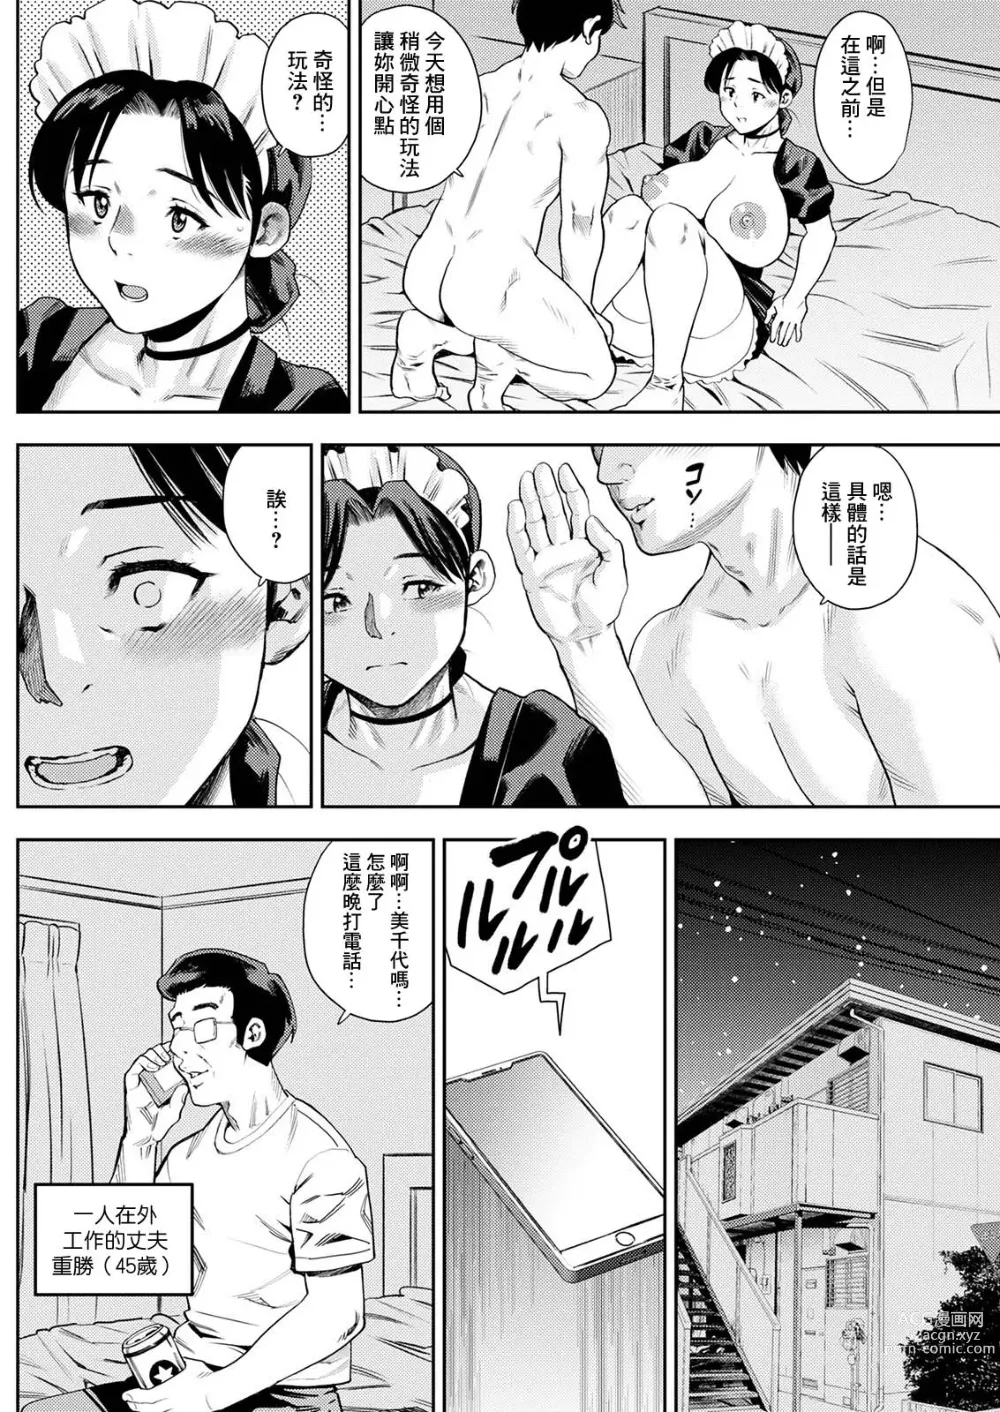 Page 10 of manga Michiyo-san no Hiasobi Kouhen